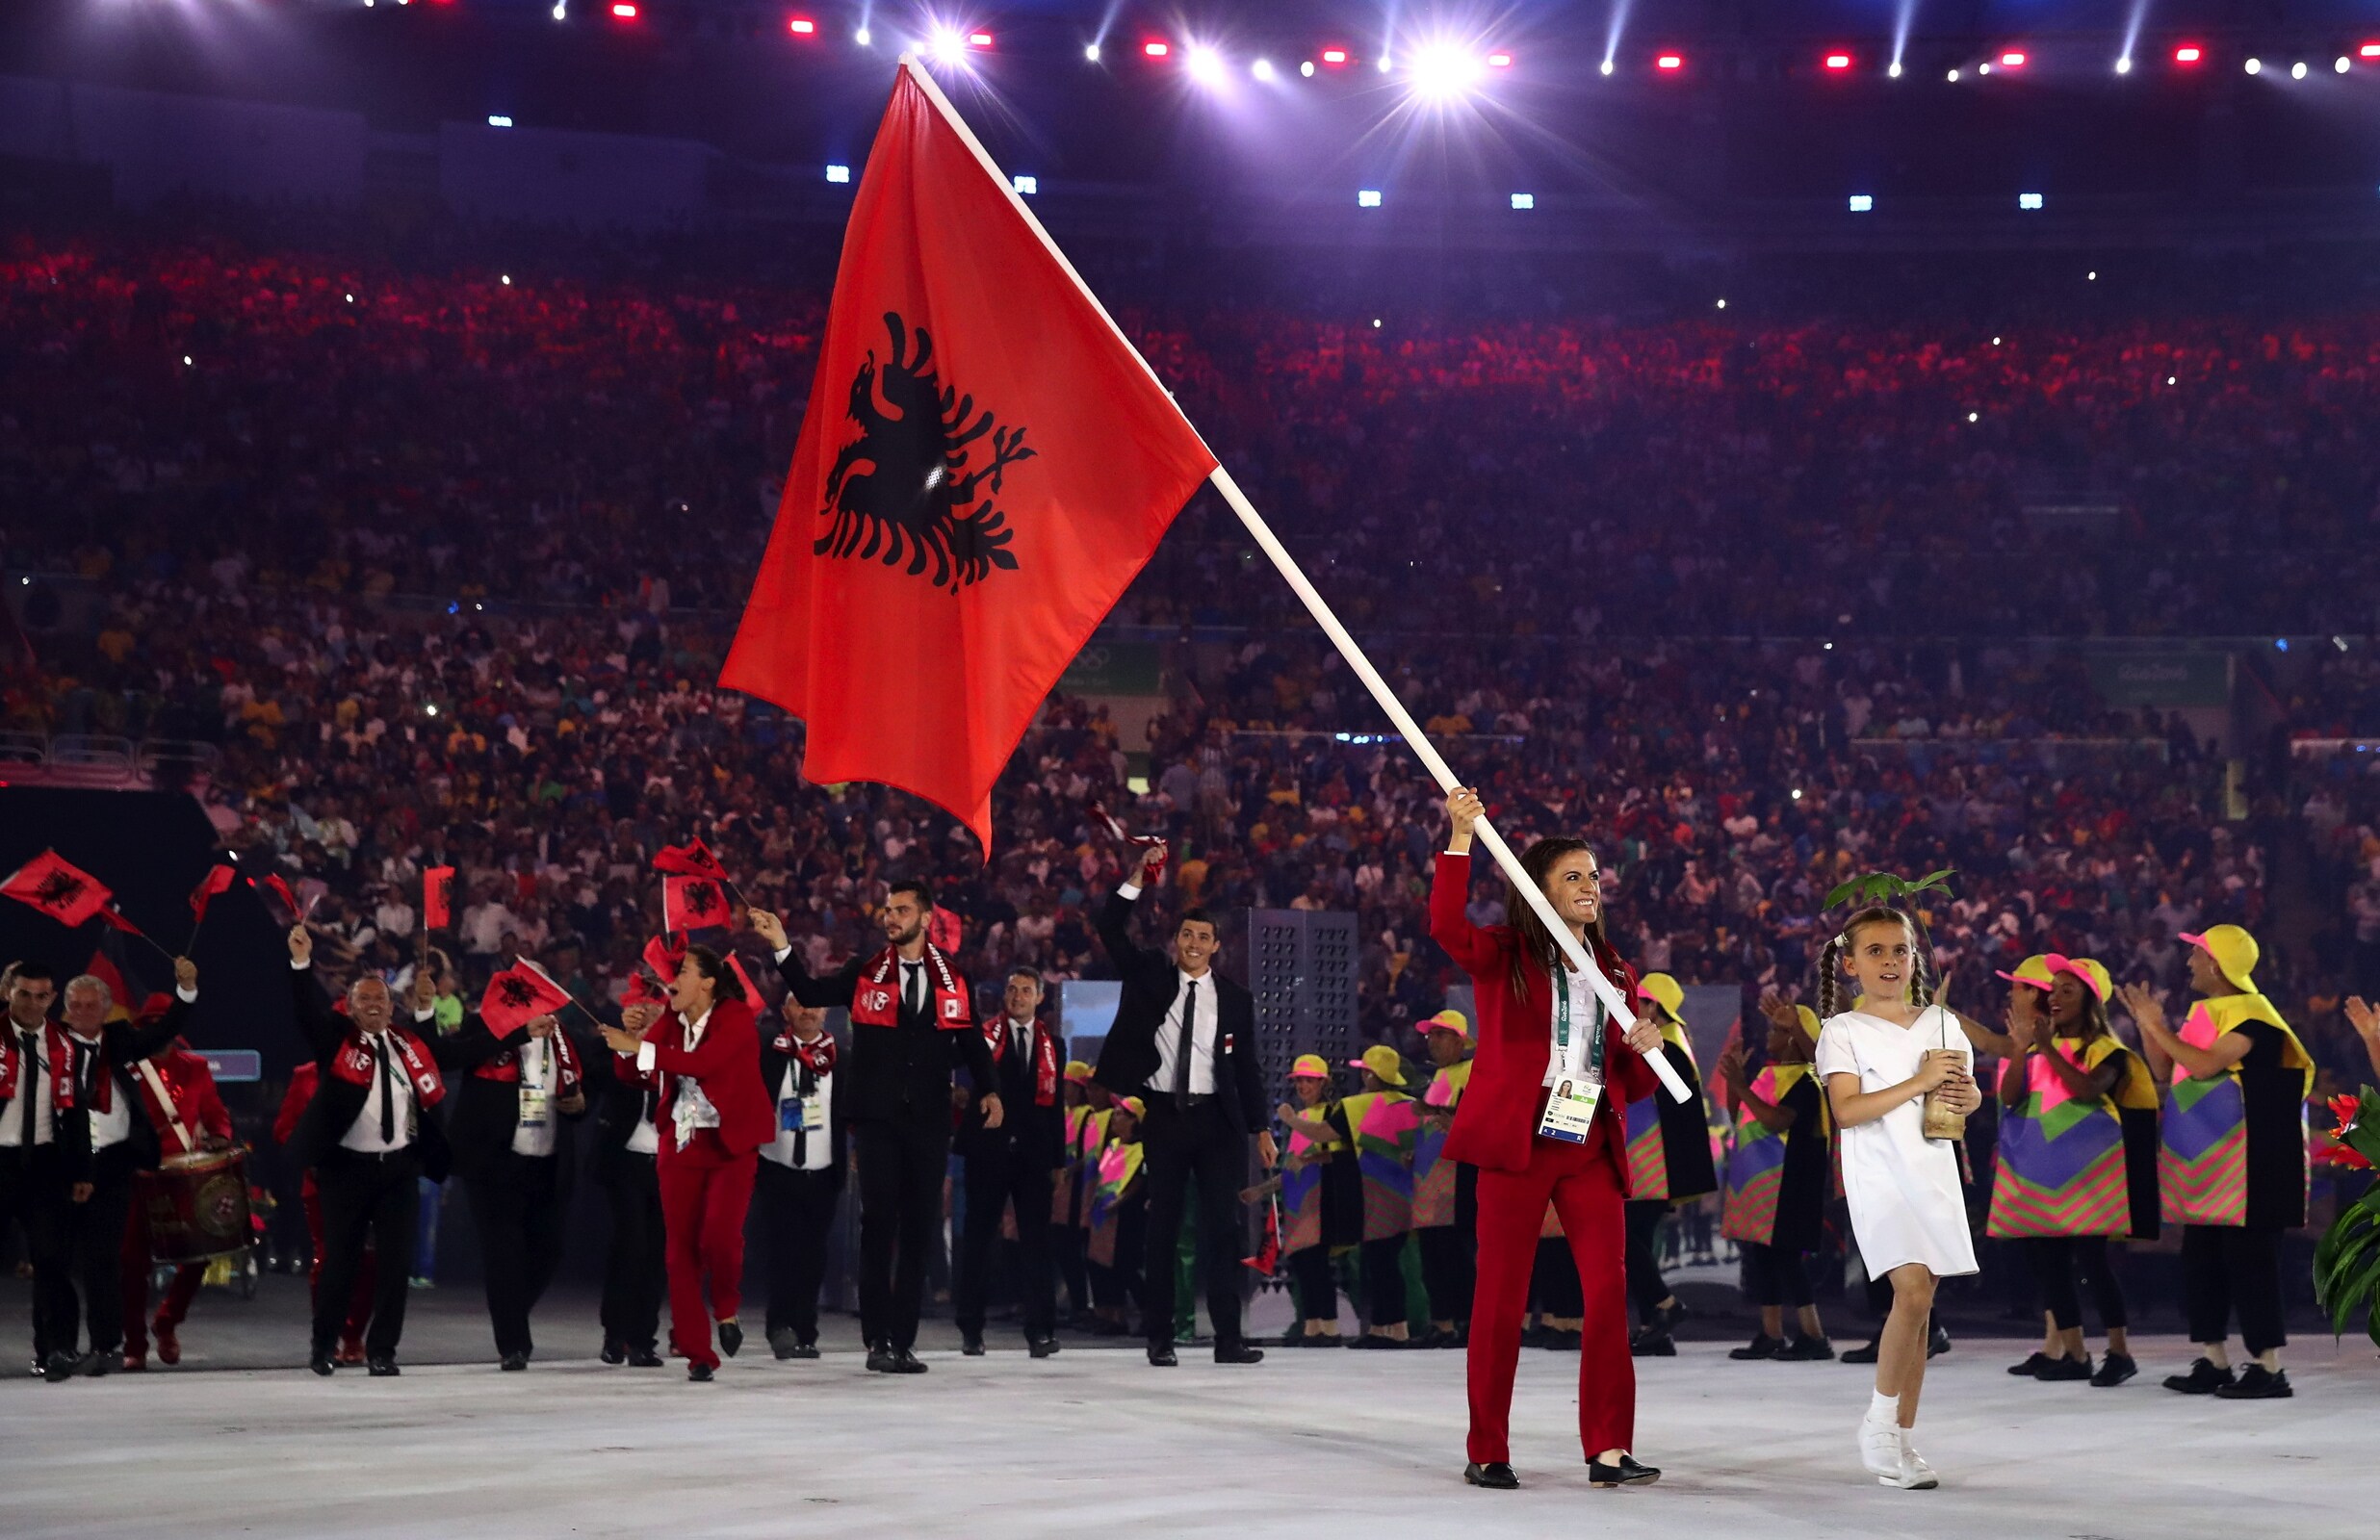 Rio 2016 - Opening Ceremony